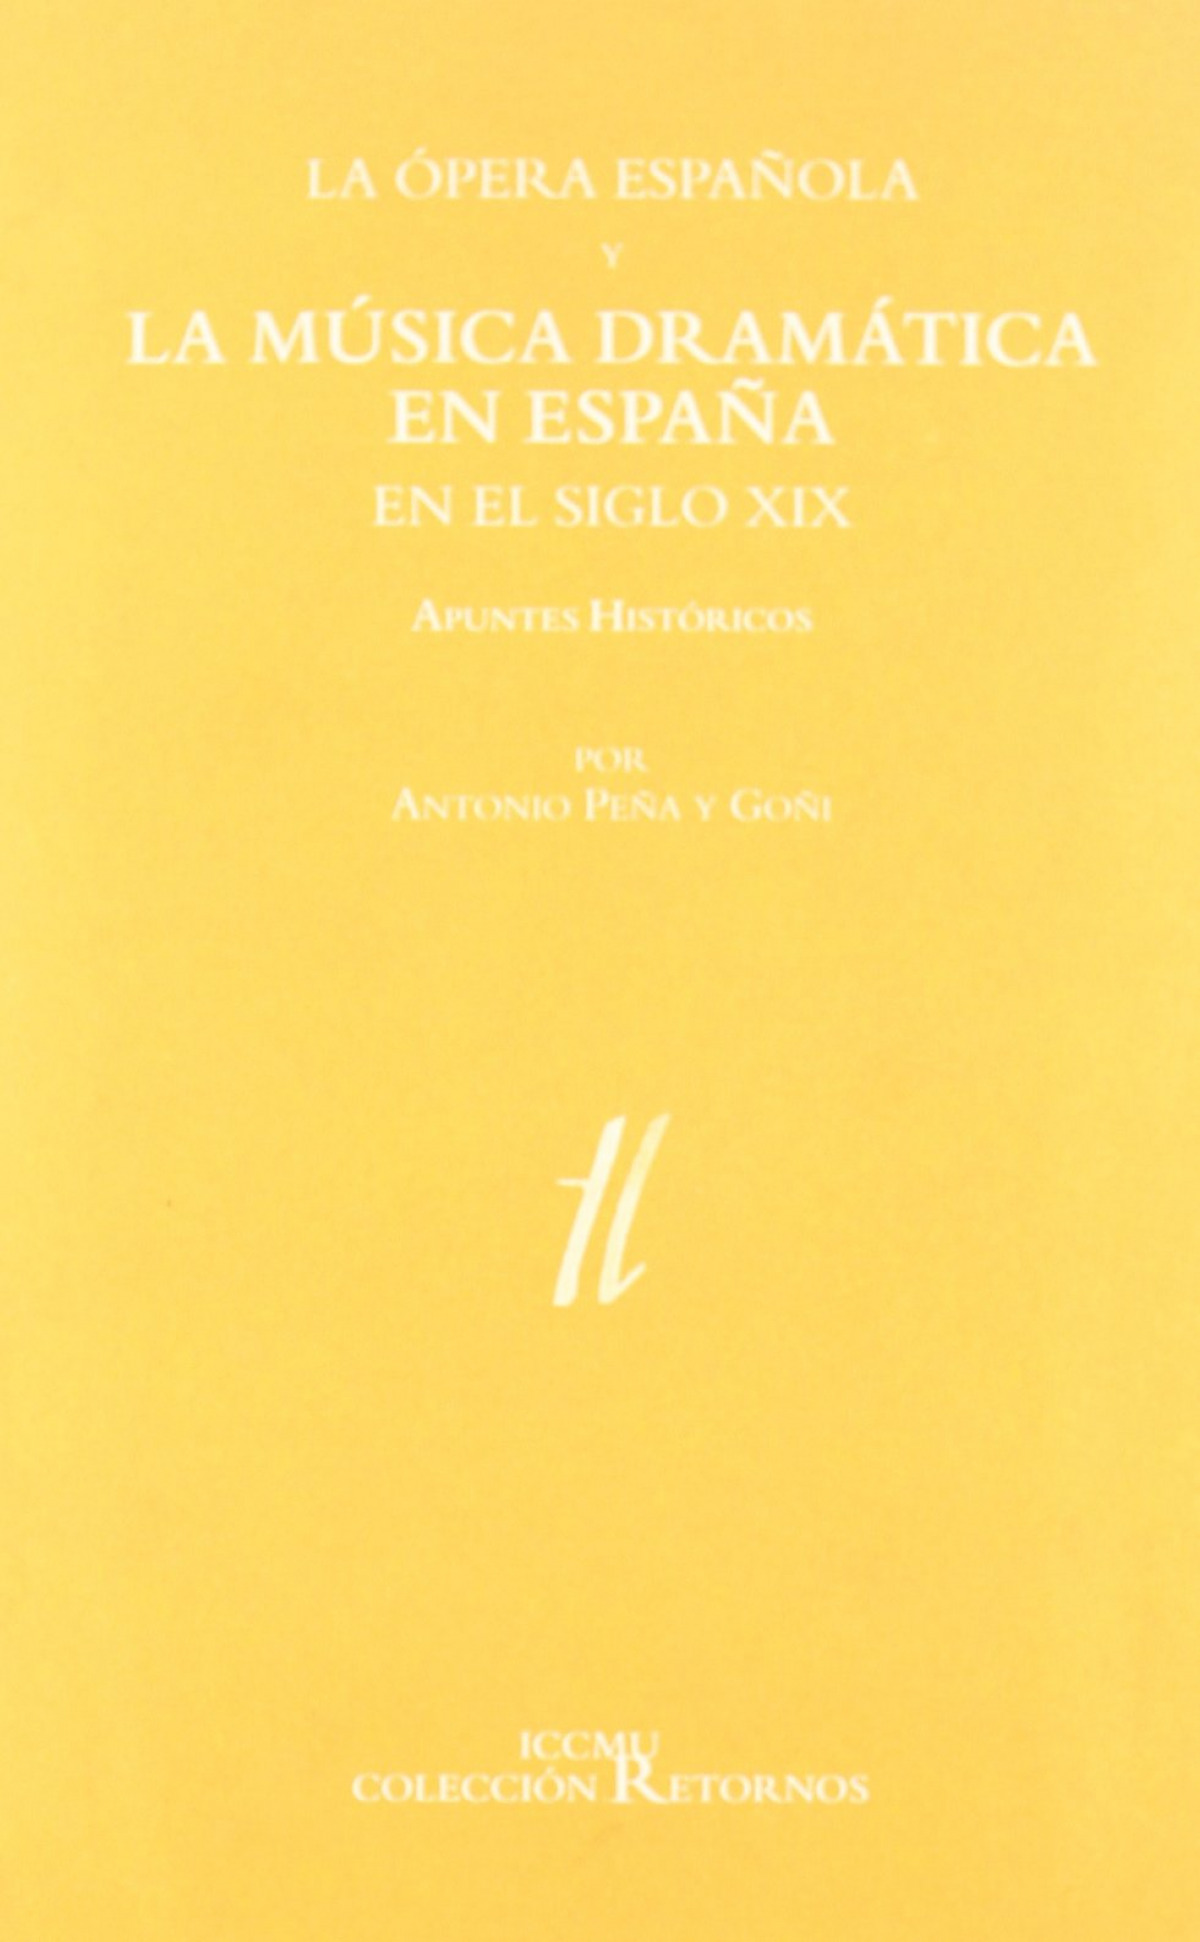 Opera espaÑola y musica - PeÑa, Antonio